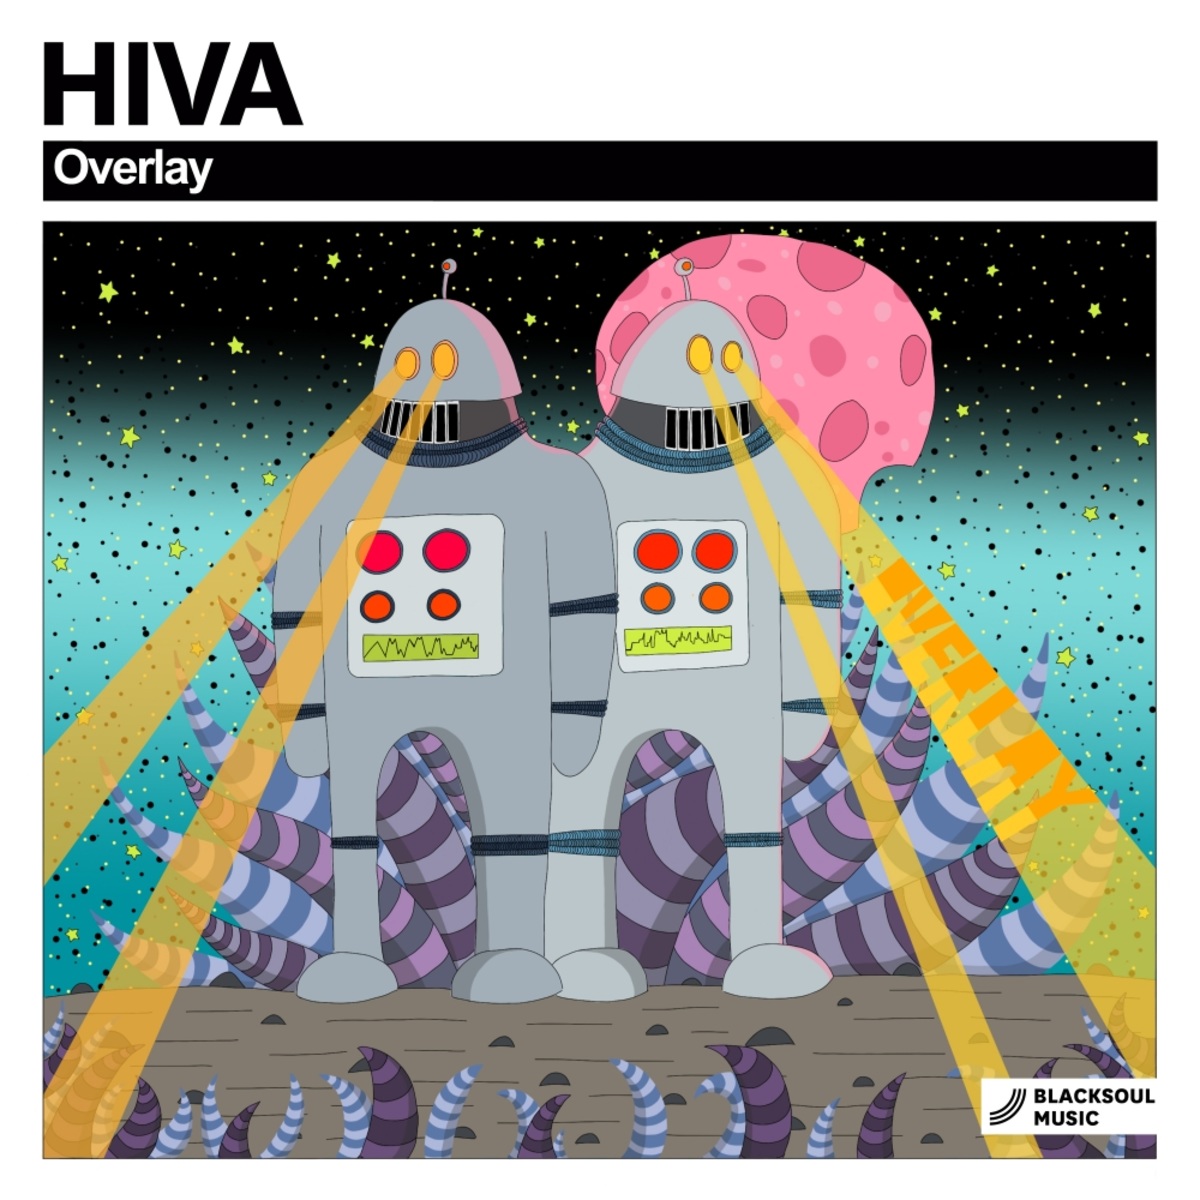 Hiva - Overlay / Blacksoul Music